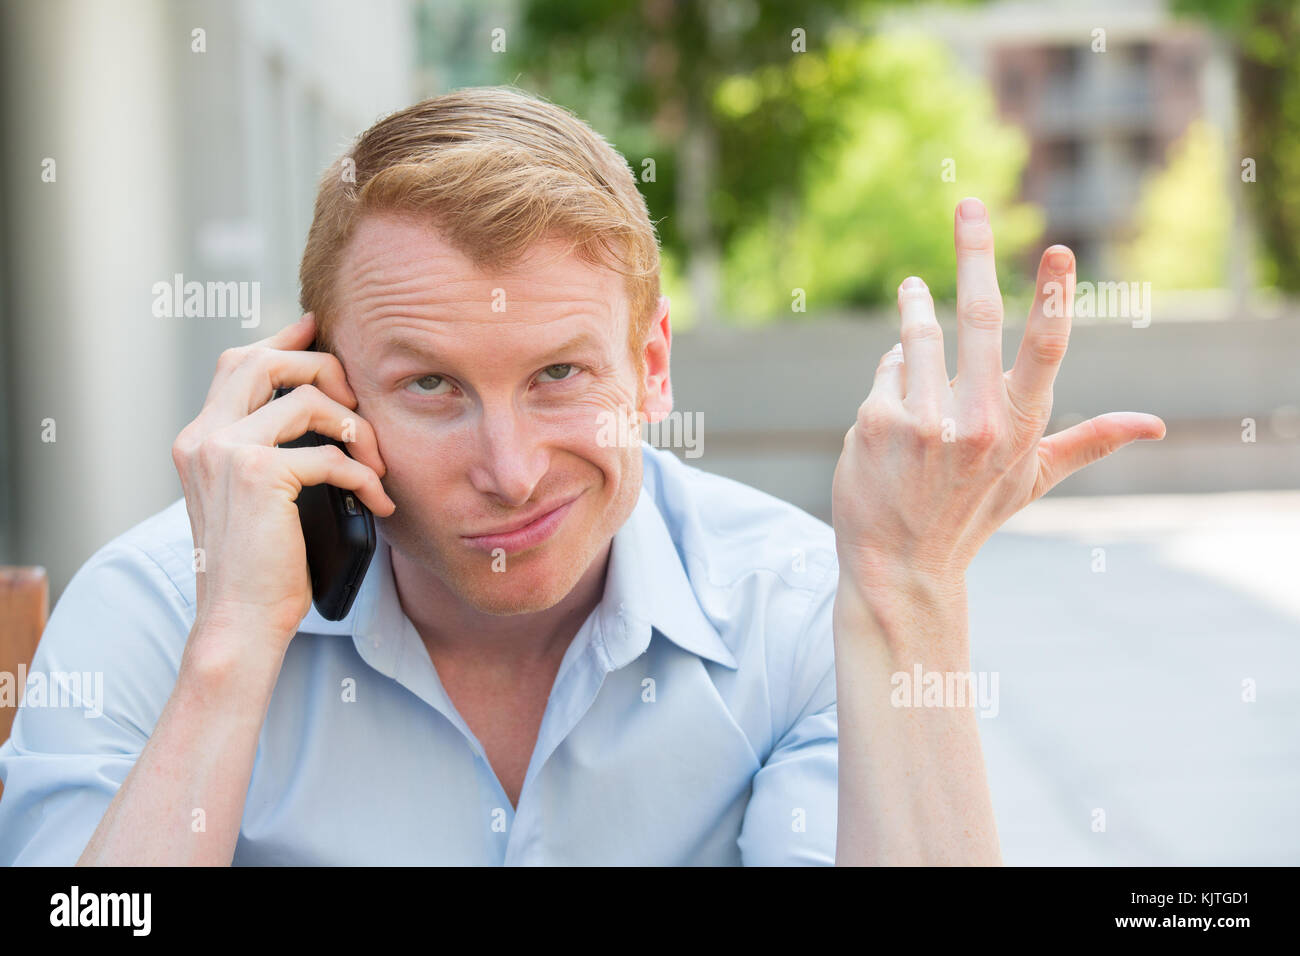 Closeup portrait, jeune homme contrarié, frustré, énervé par quelqu'un parler sur son téléphone mobile, de mauvaises nouvelles, isolé à l'extérieur à l'extérieur de l'arrière-plan. lo Banque D'Images